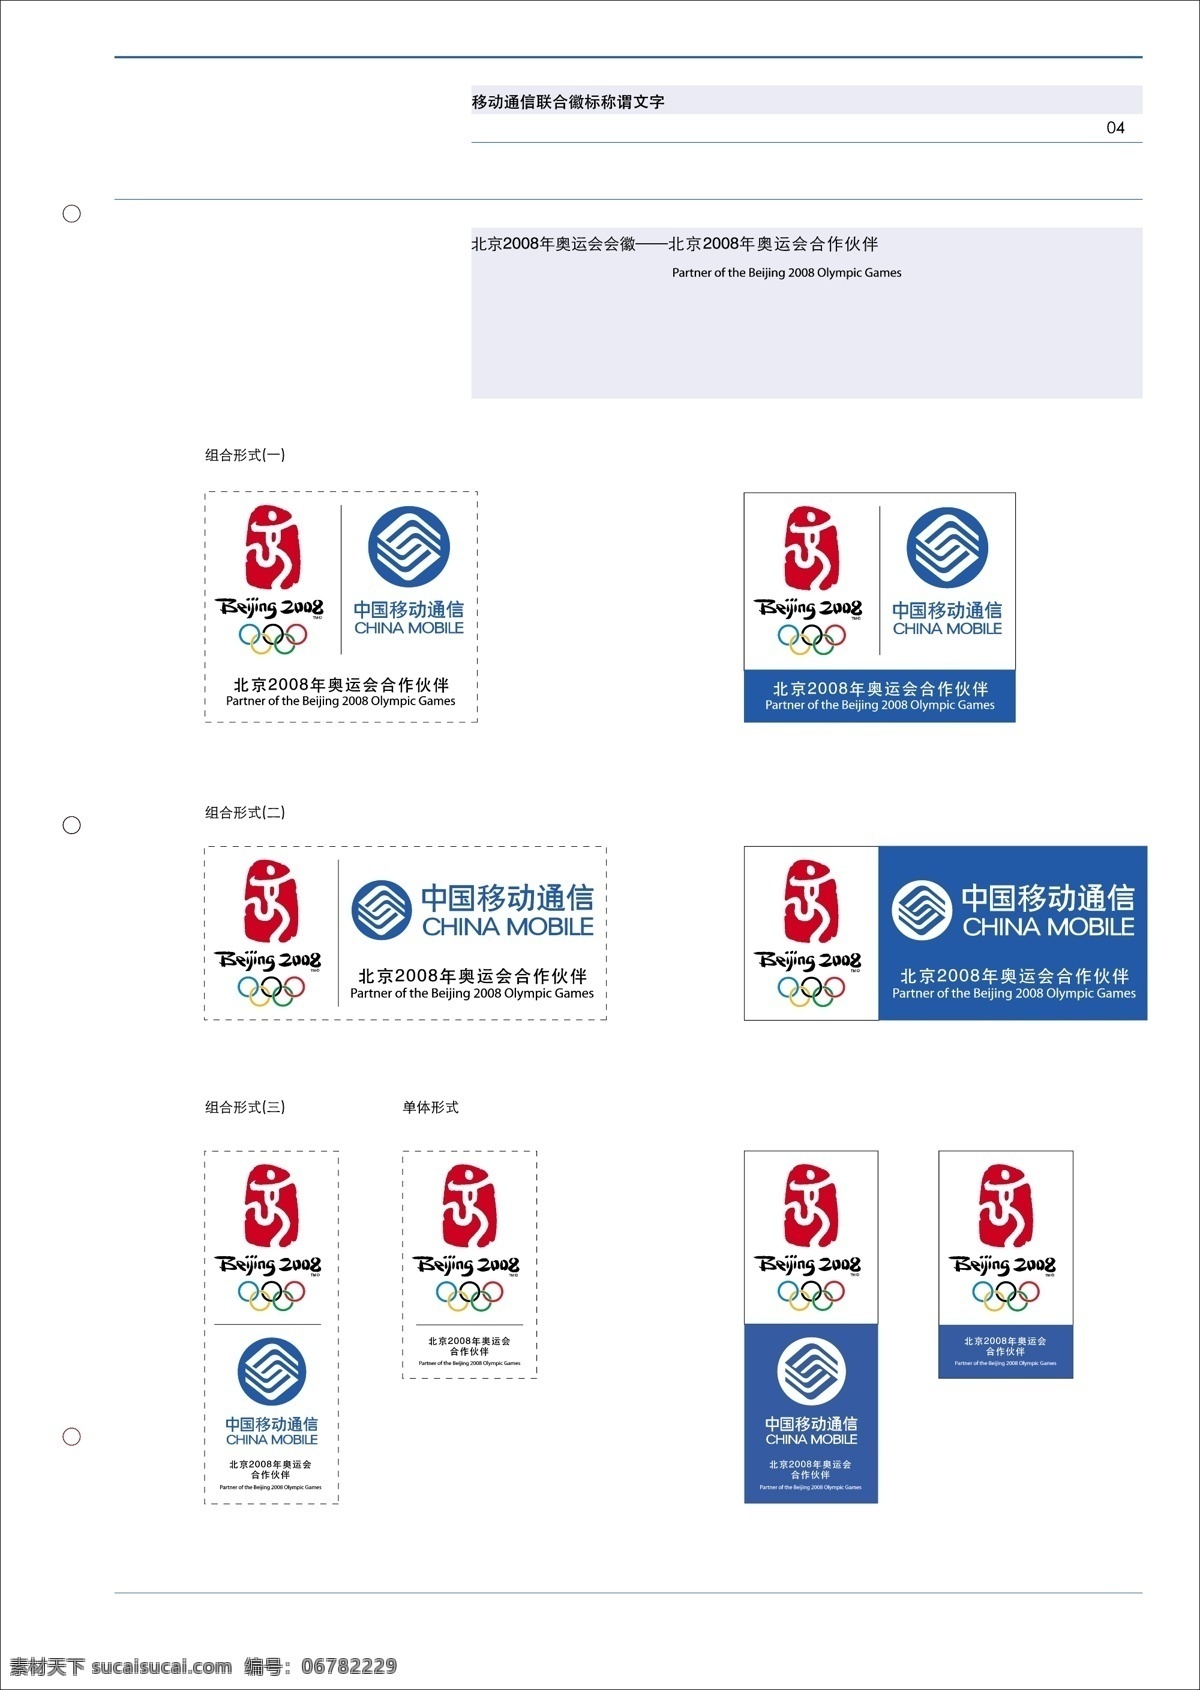 奥运会 logo 北京 2008 中国